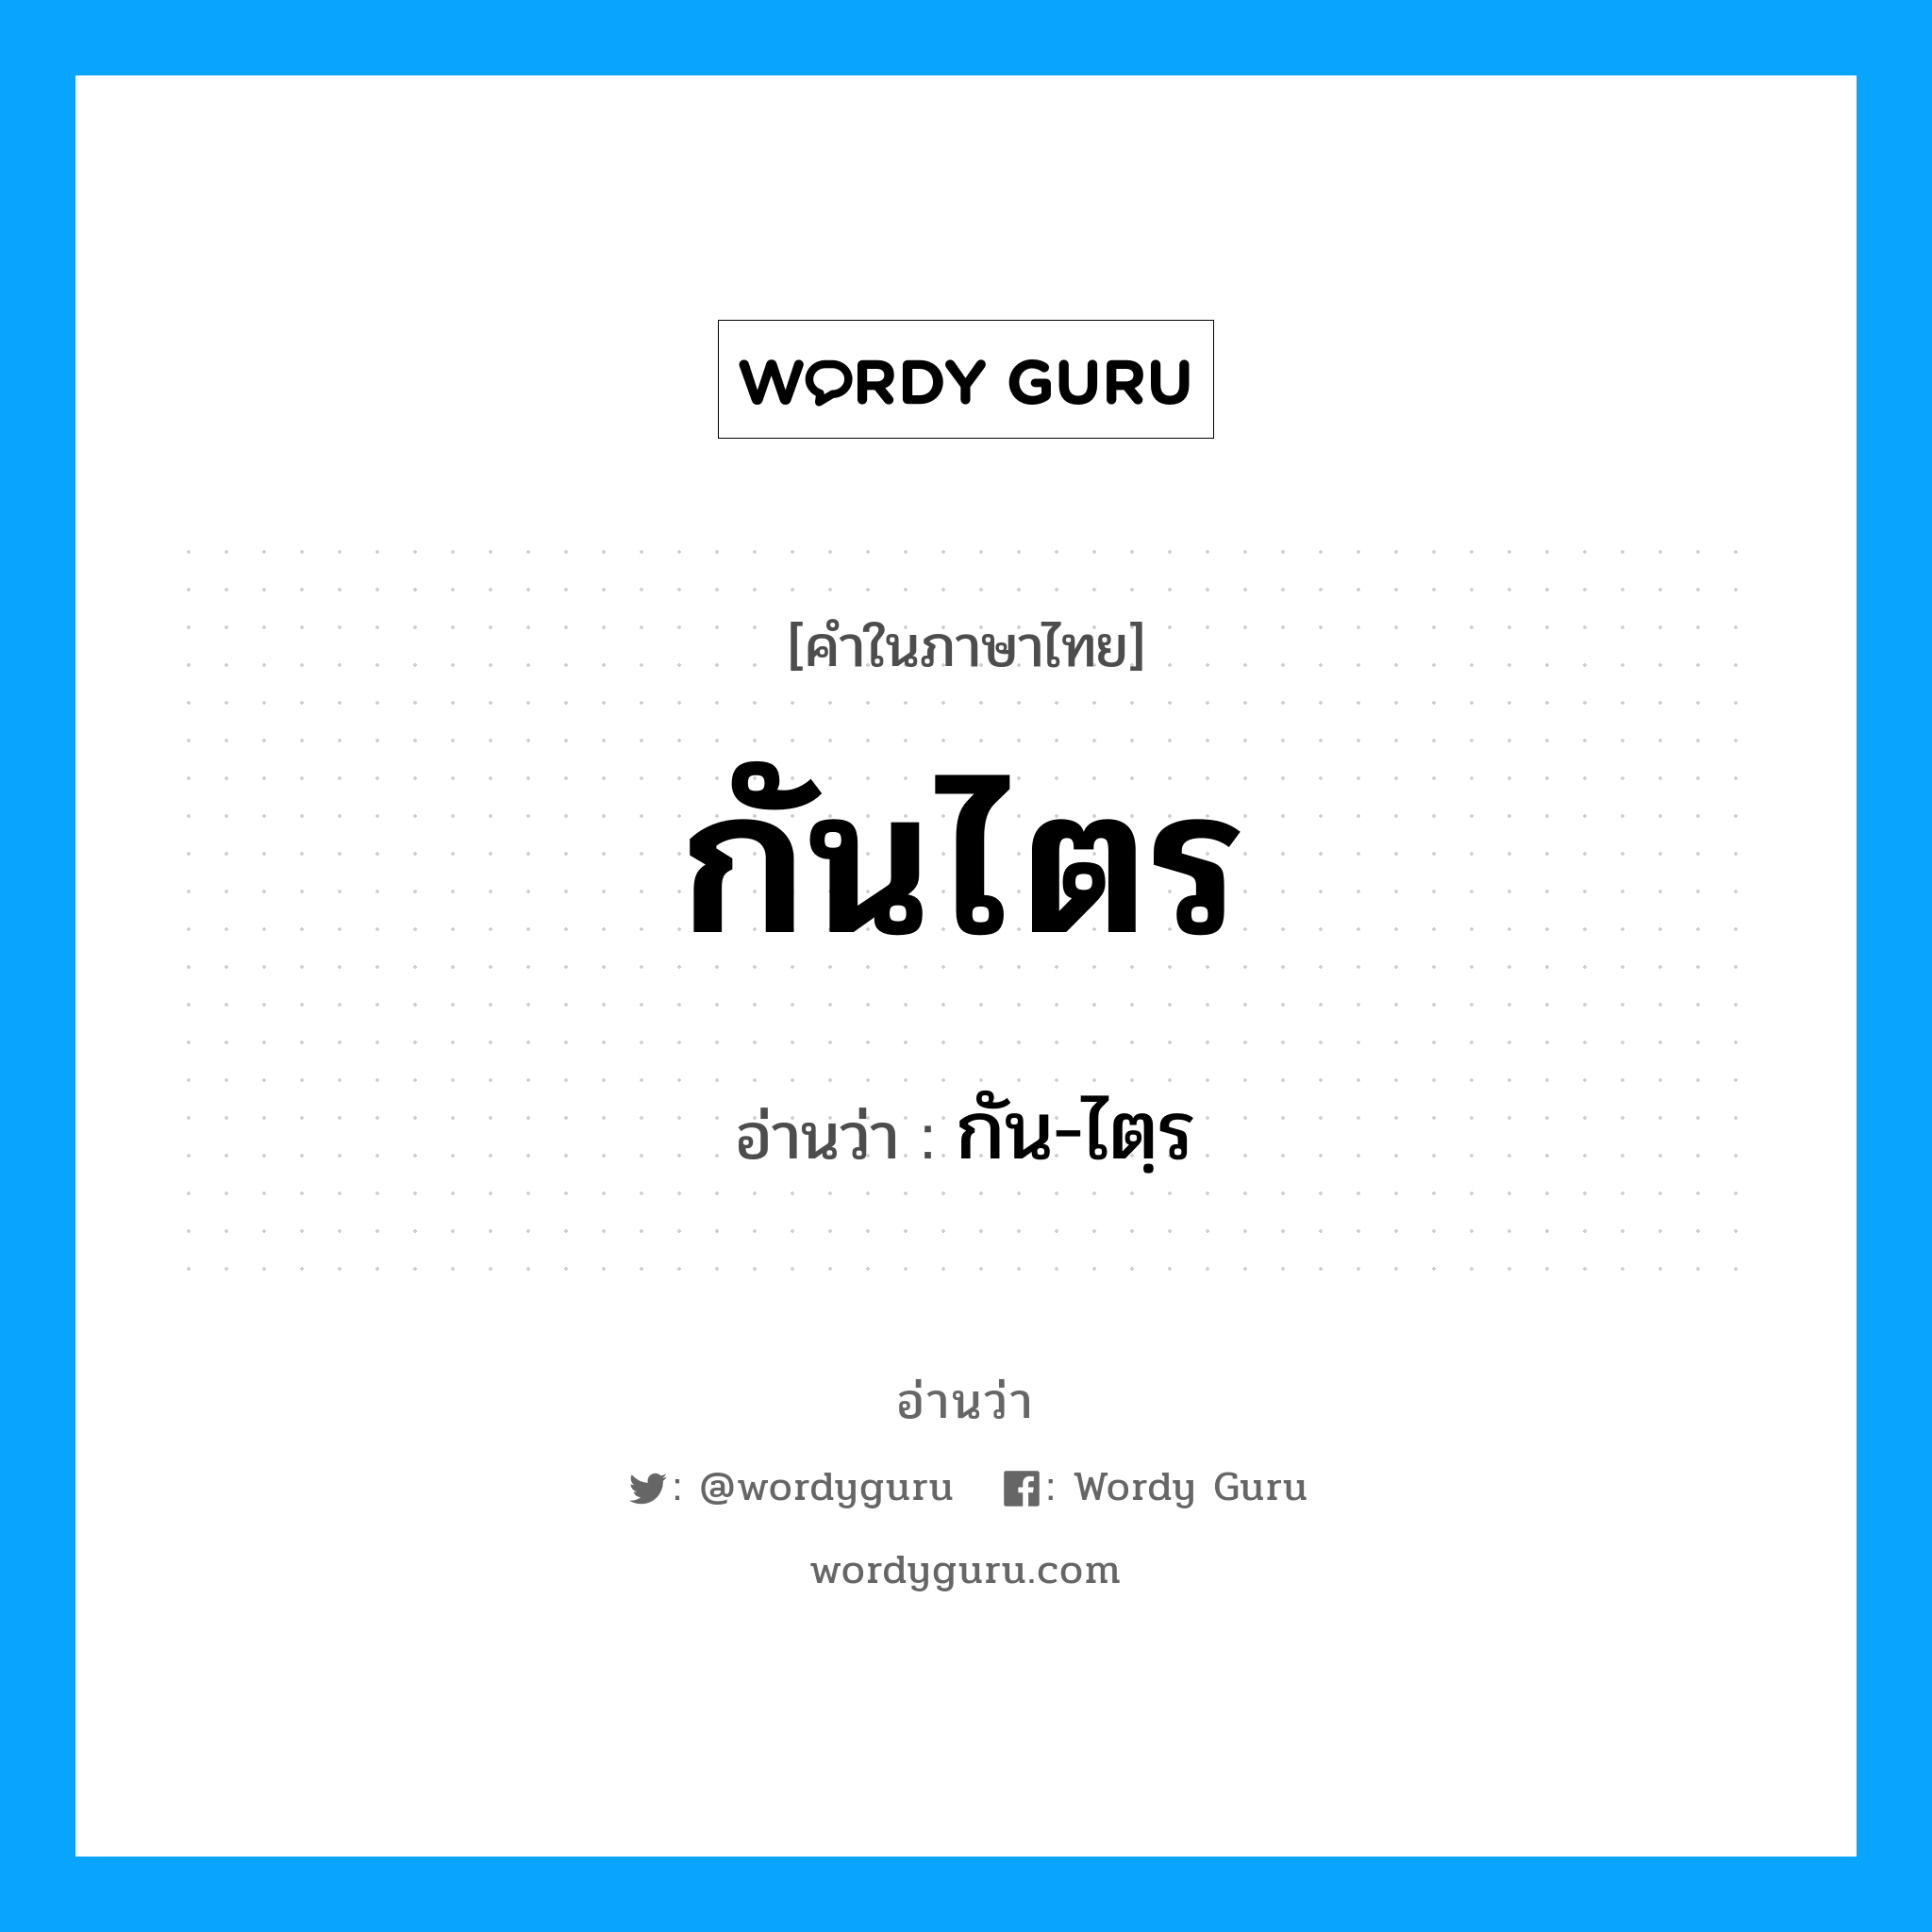 กัน-ไตฺร เป็นคำอ่านของคำไหน?, คำในภาษาไทย กัน-ไตฺร อ่านว่า กันไตร